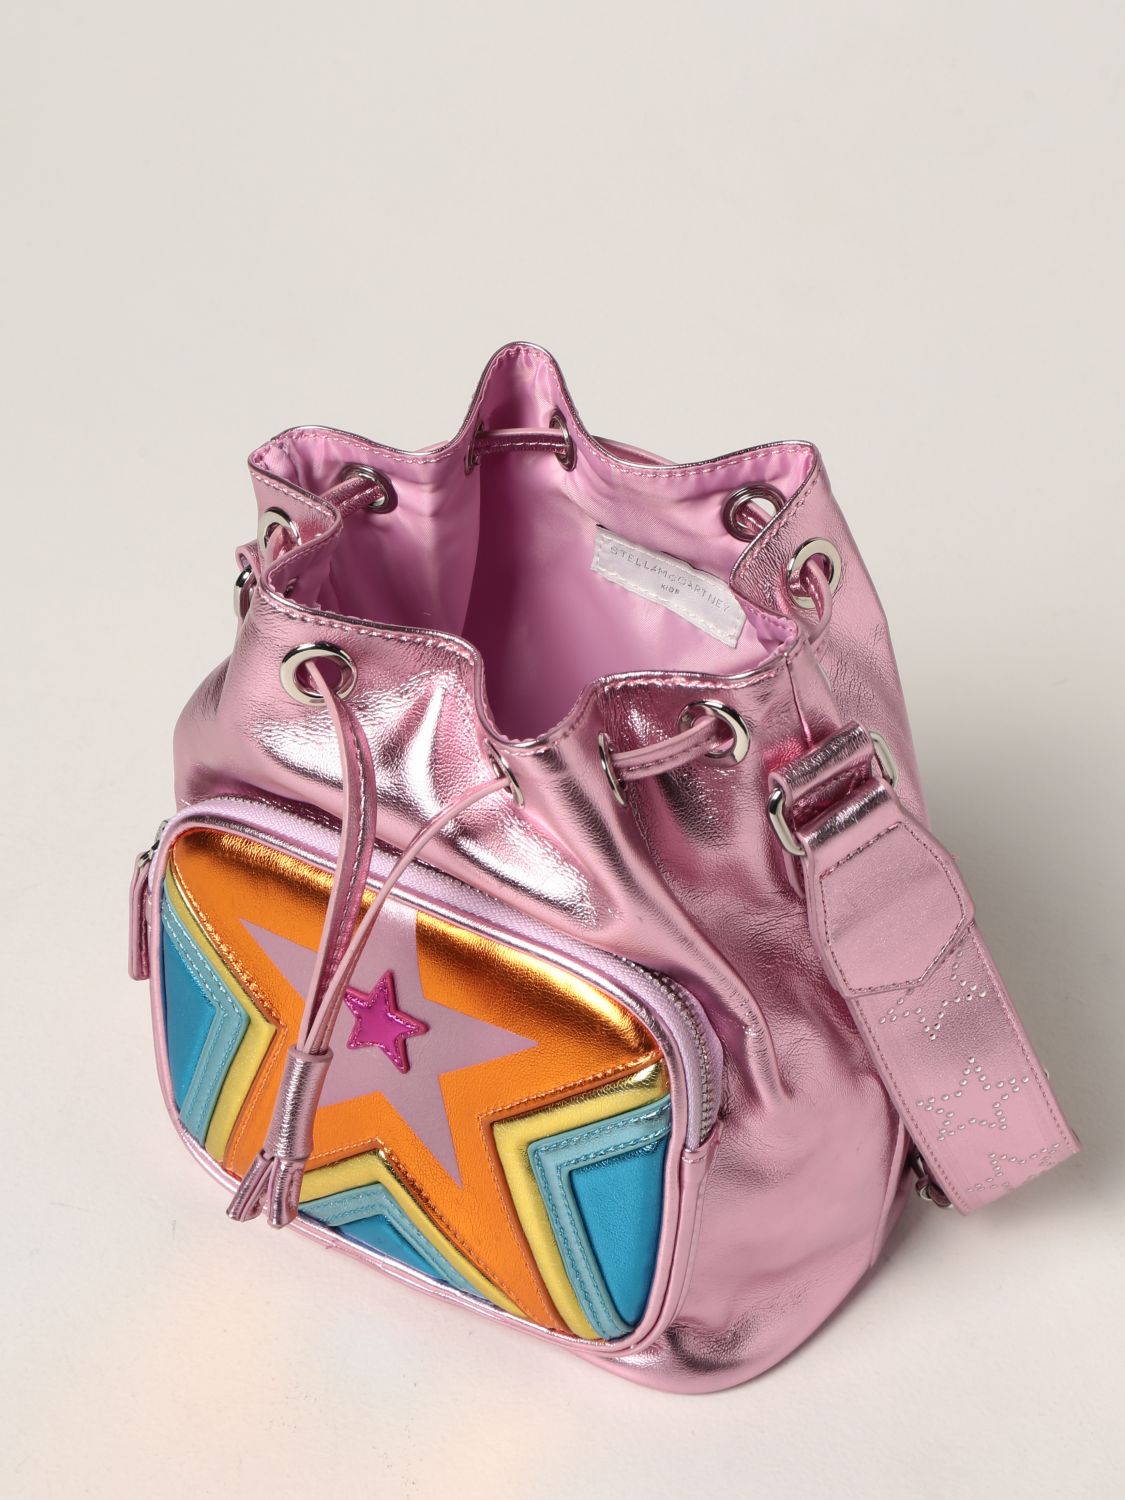 STELLA MCCARTNEY: Bag kids | Bag Stella Mccartney Kids Pink | Bag ...